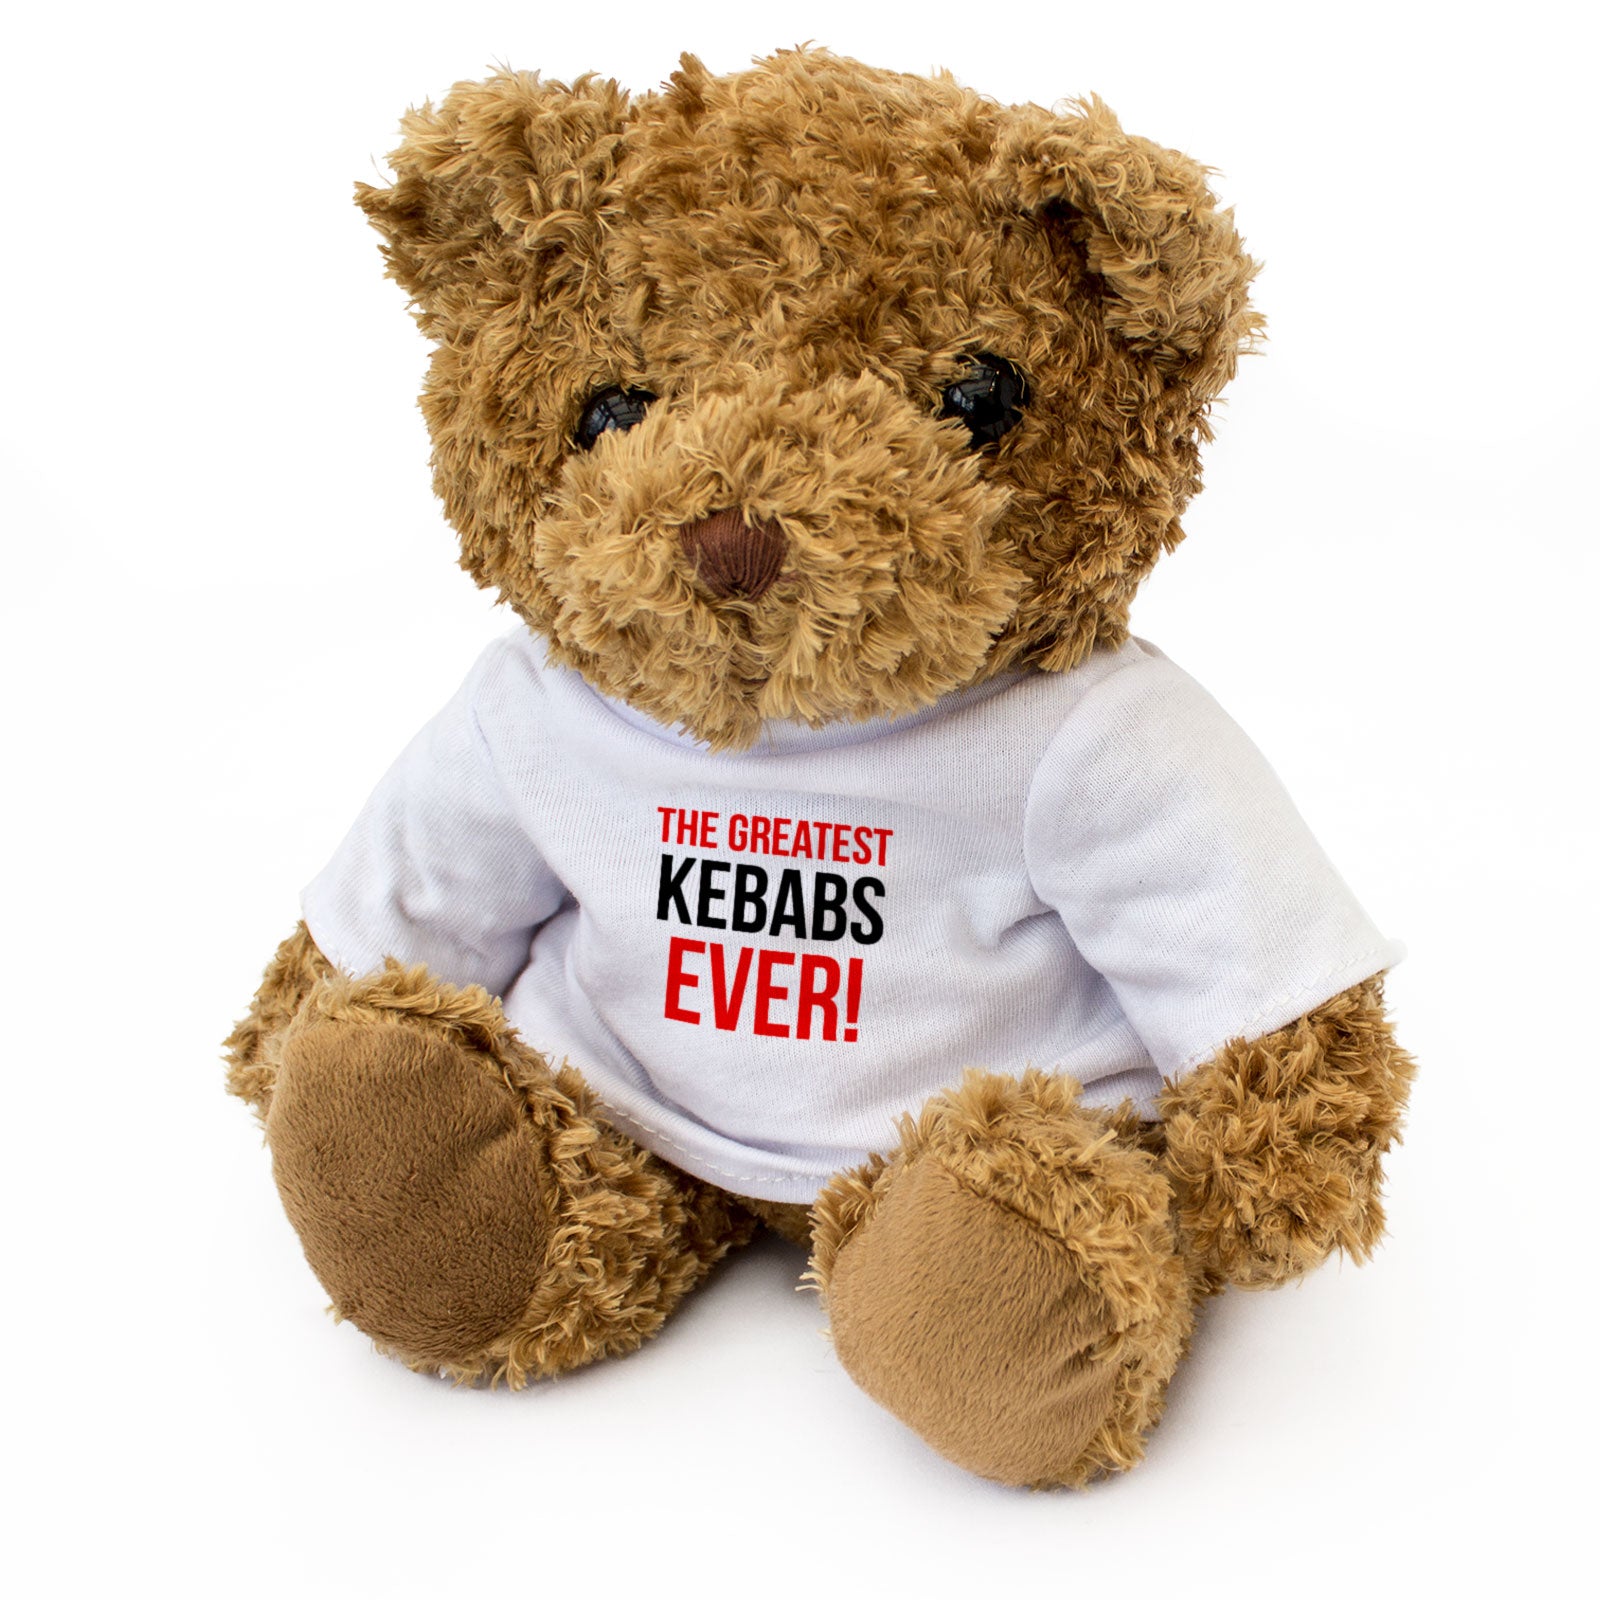 The Greatest Kebabs Ever - Teddy Bear